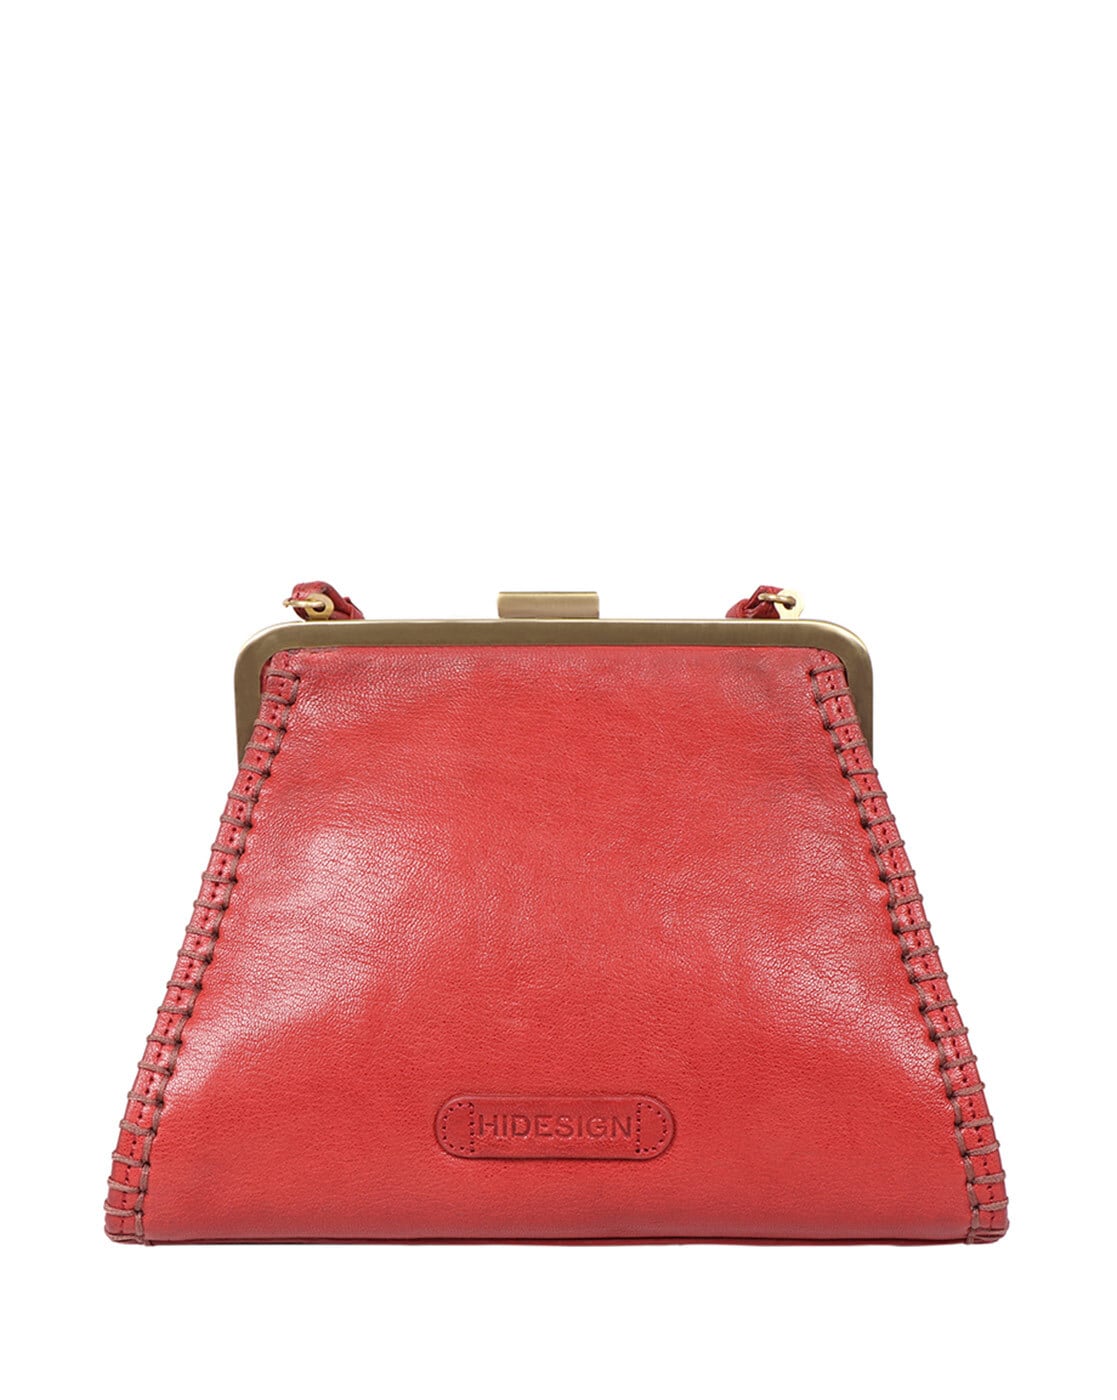 Hidesign Bag On Amazon best brand women leather handbag Hidesign men's  wallet | लेडीज के लिये गुड न्यूज, Hidesign के हैंडबैग पर सीधे 65% का  डिस्काउंट मिल रहा है!